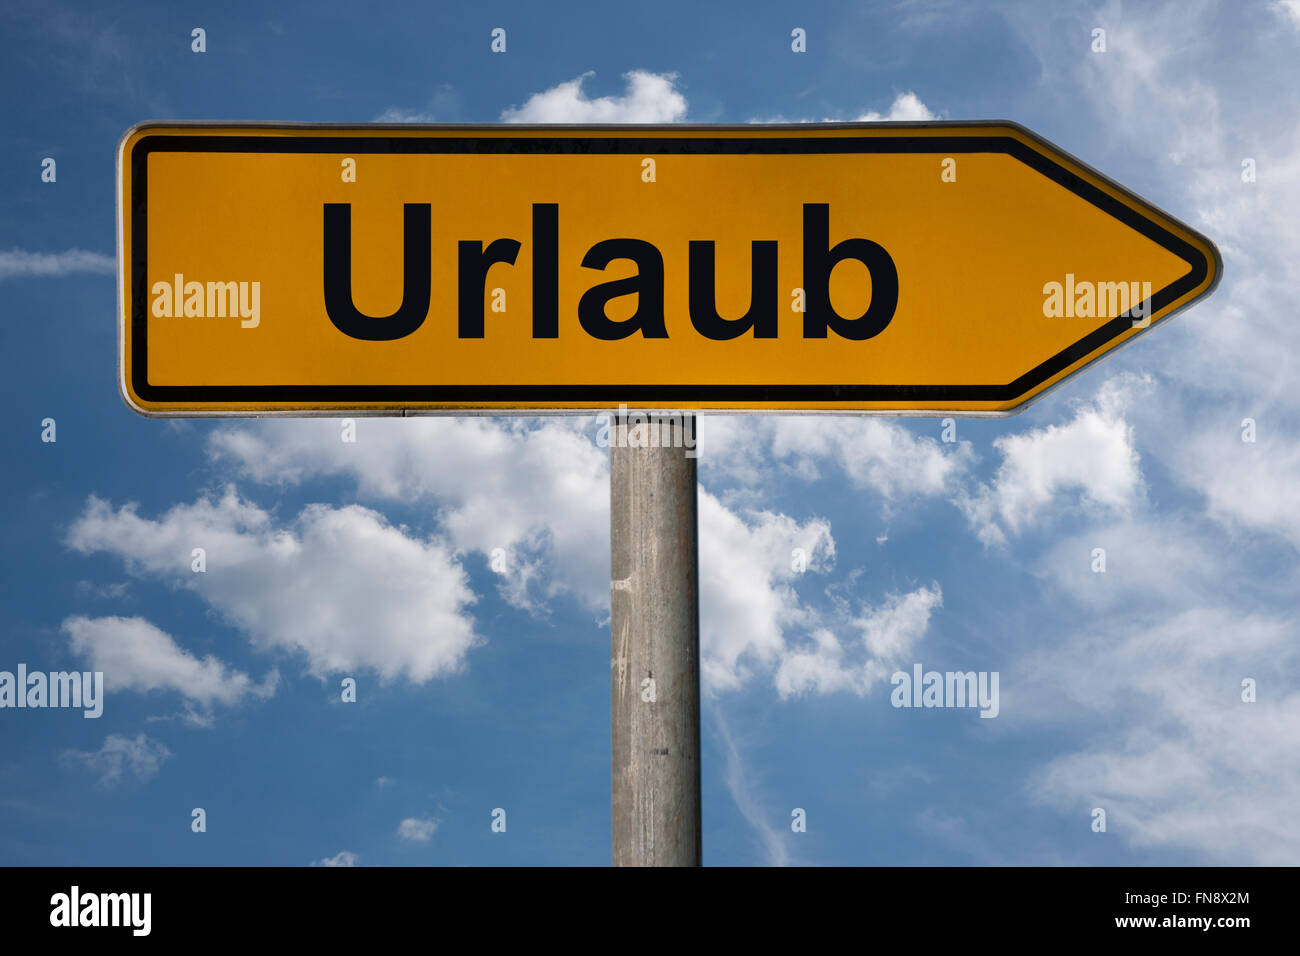 Photo détail d'un panneau avec le titre allemand Urlaub (maison de vacances) Banque D'Images